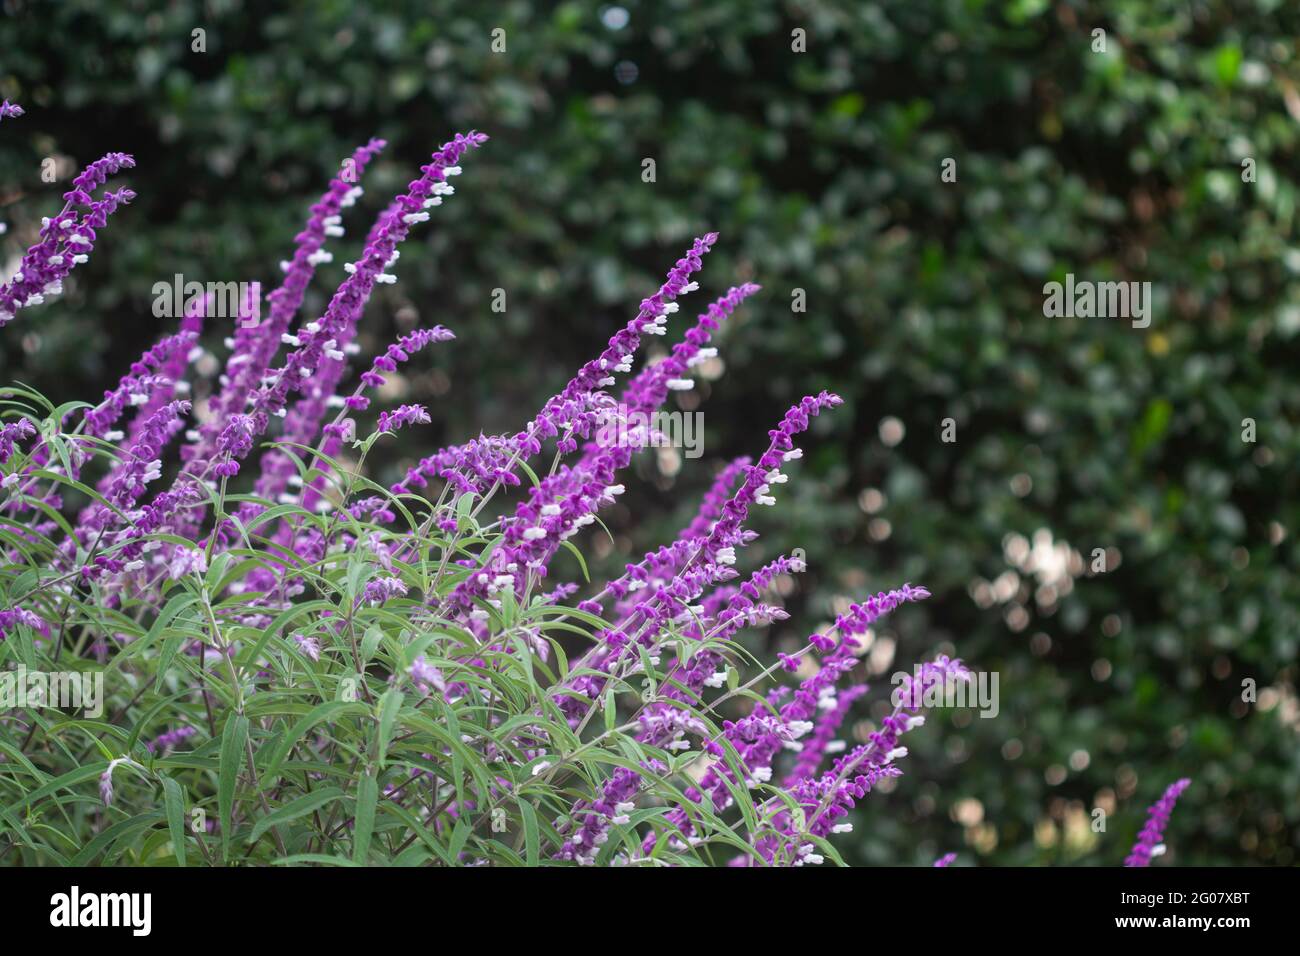 Salvia leucantha in the garden Stock Photo